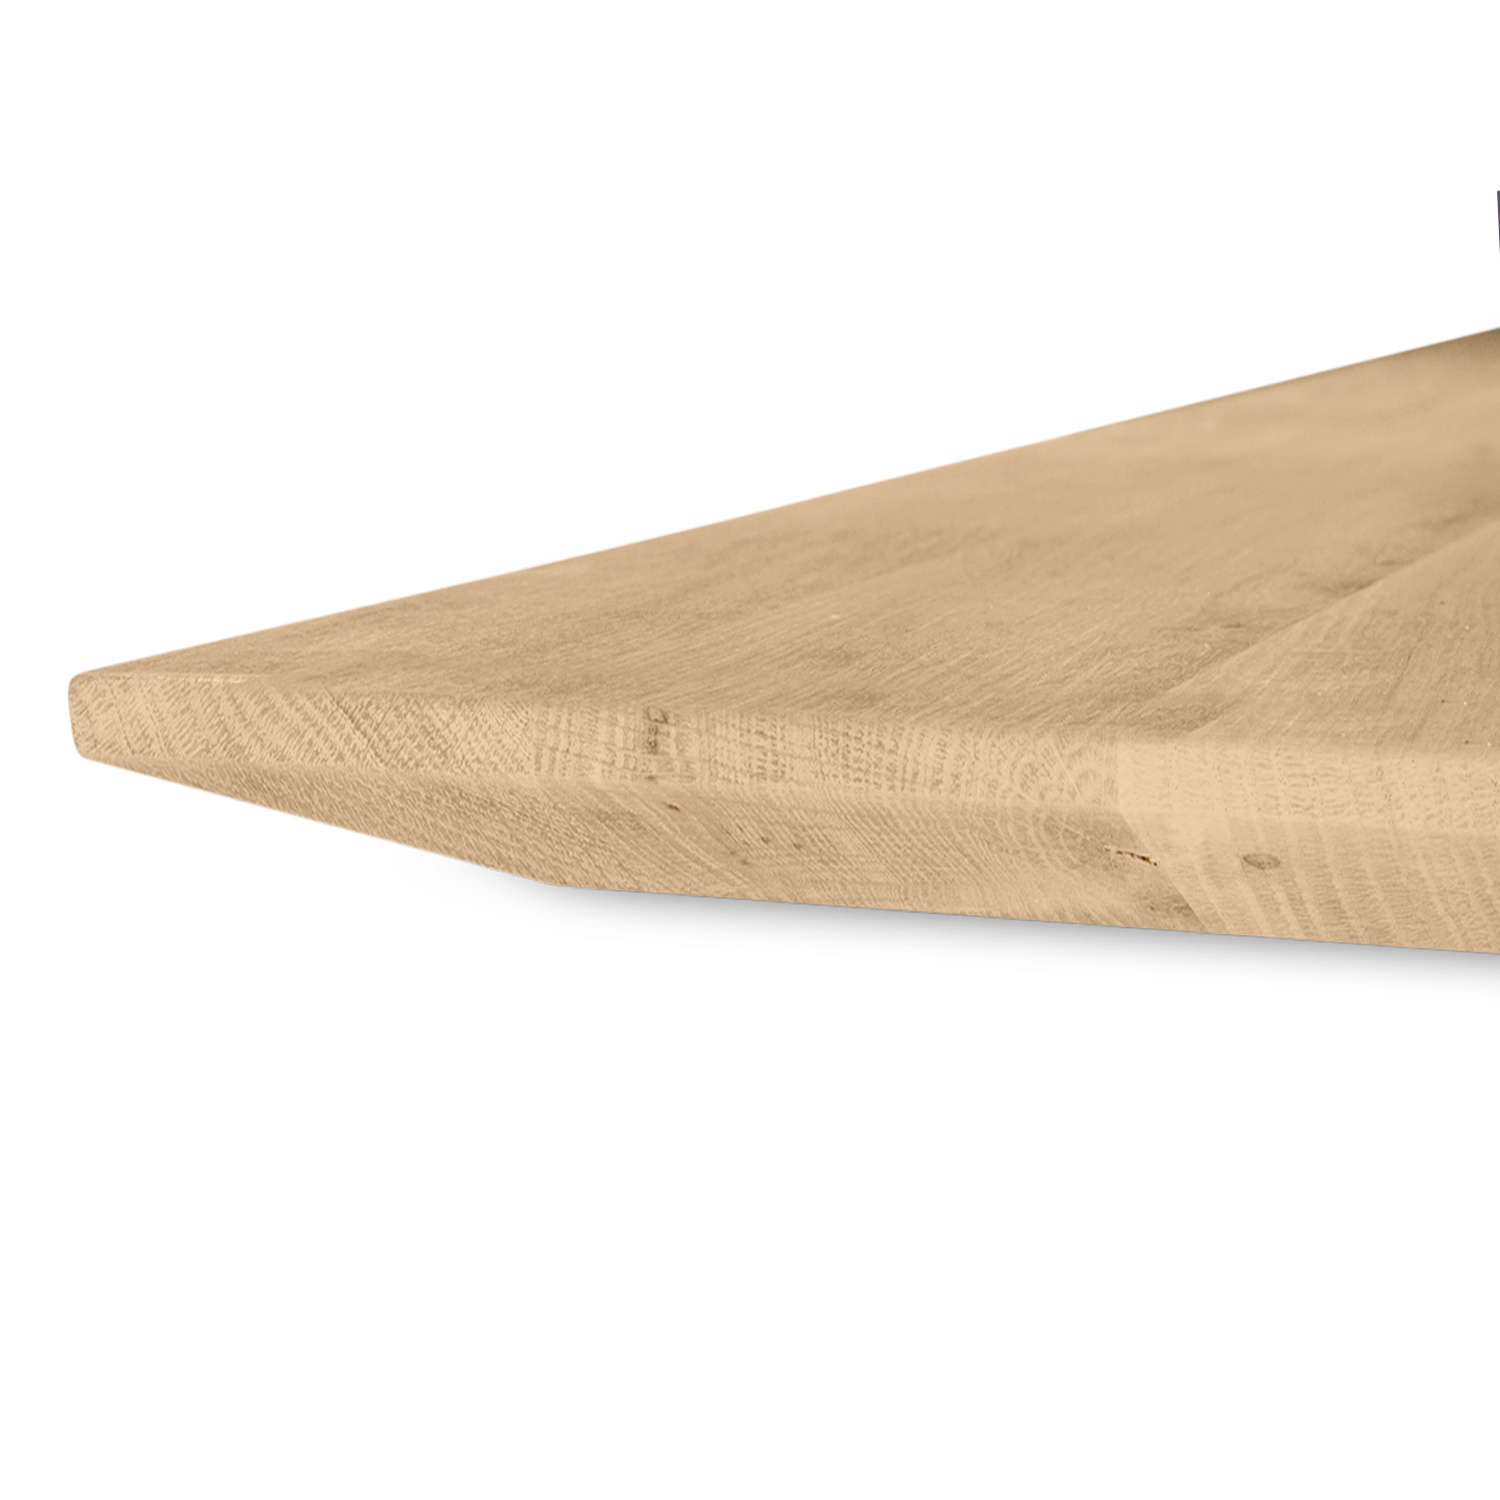  Tischplatte Eiche - Schweizer Kante - 4 cm dick (1-Schicht) - Breite Lamellen (10 - 12 cm breit) - Eichenholz A-Qualität - verleimt & künstlich getrocknet (HF 8-12%) - verschiedene Größen